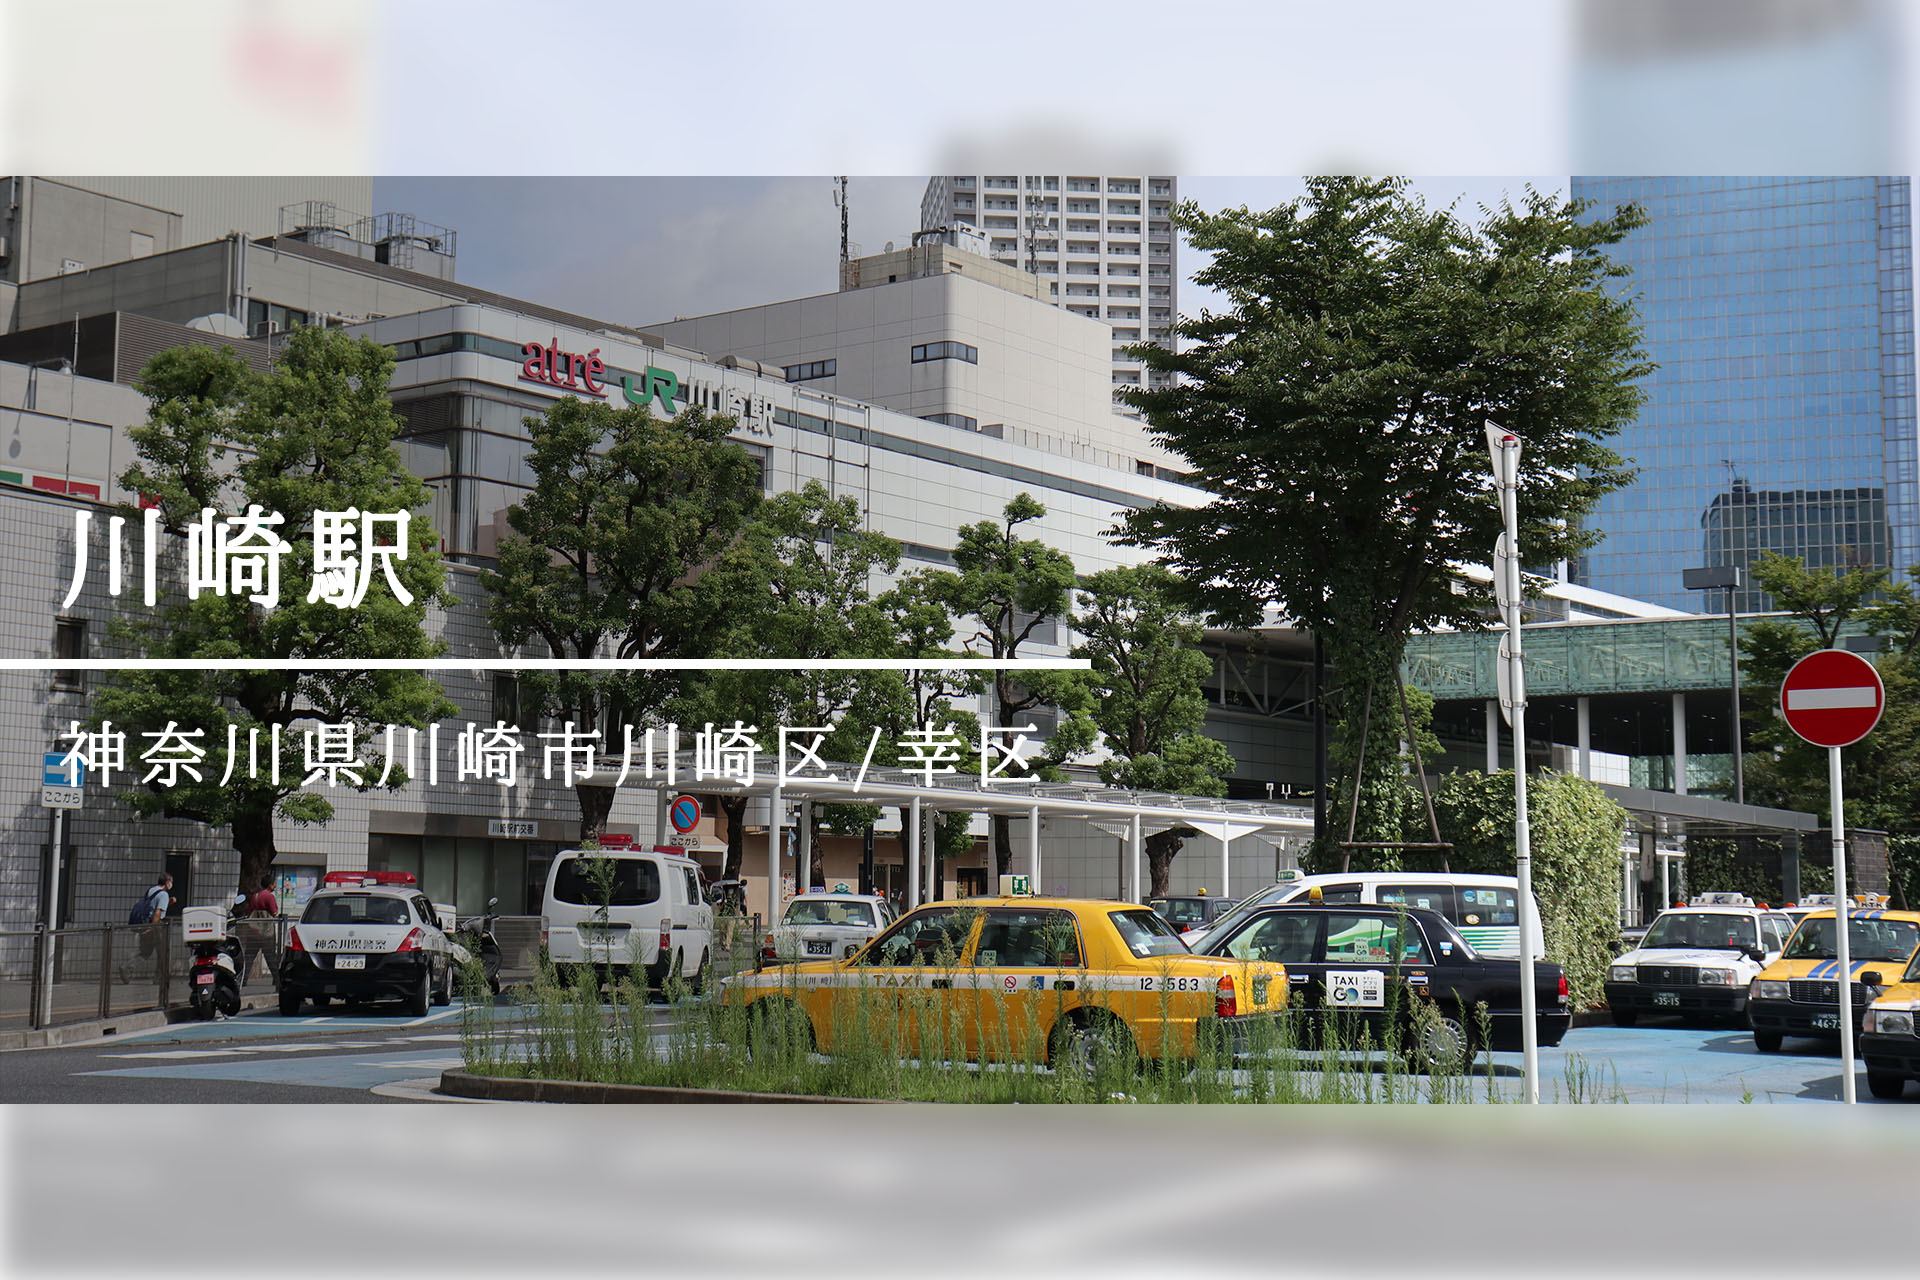 川崎駅・京急川崎駅周辺 ―神奈川県第2の都市の表と裏―